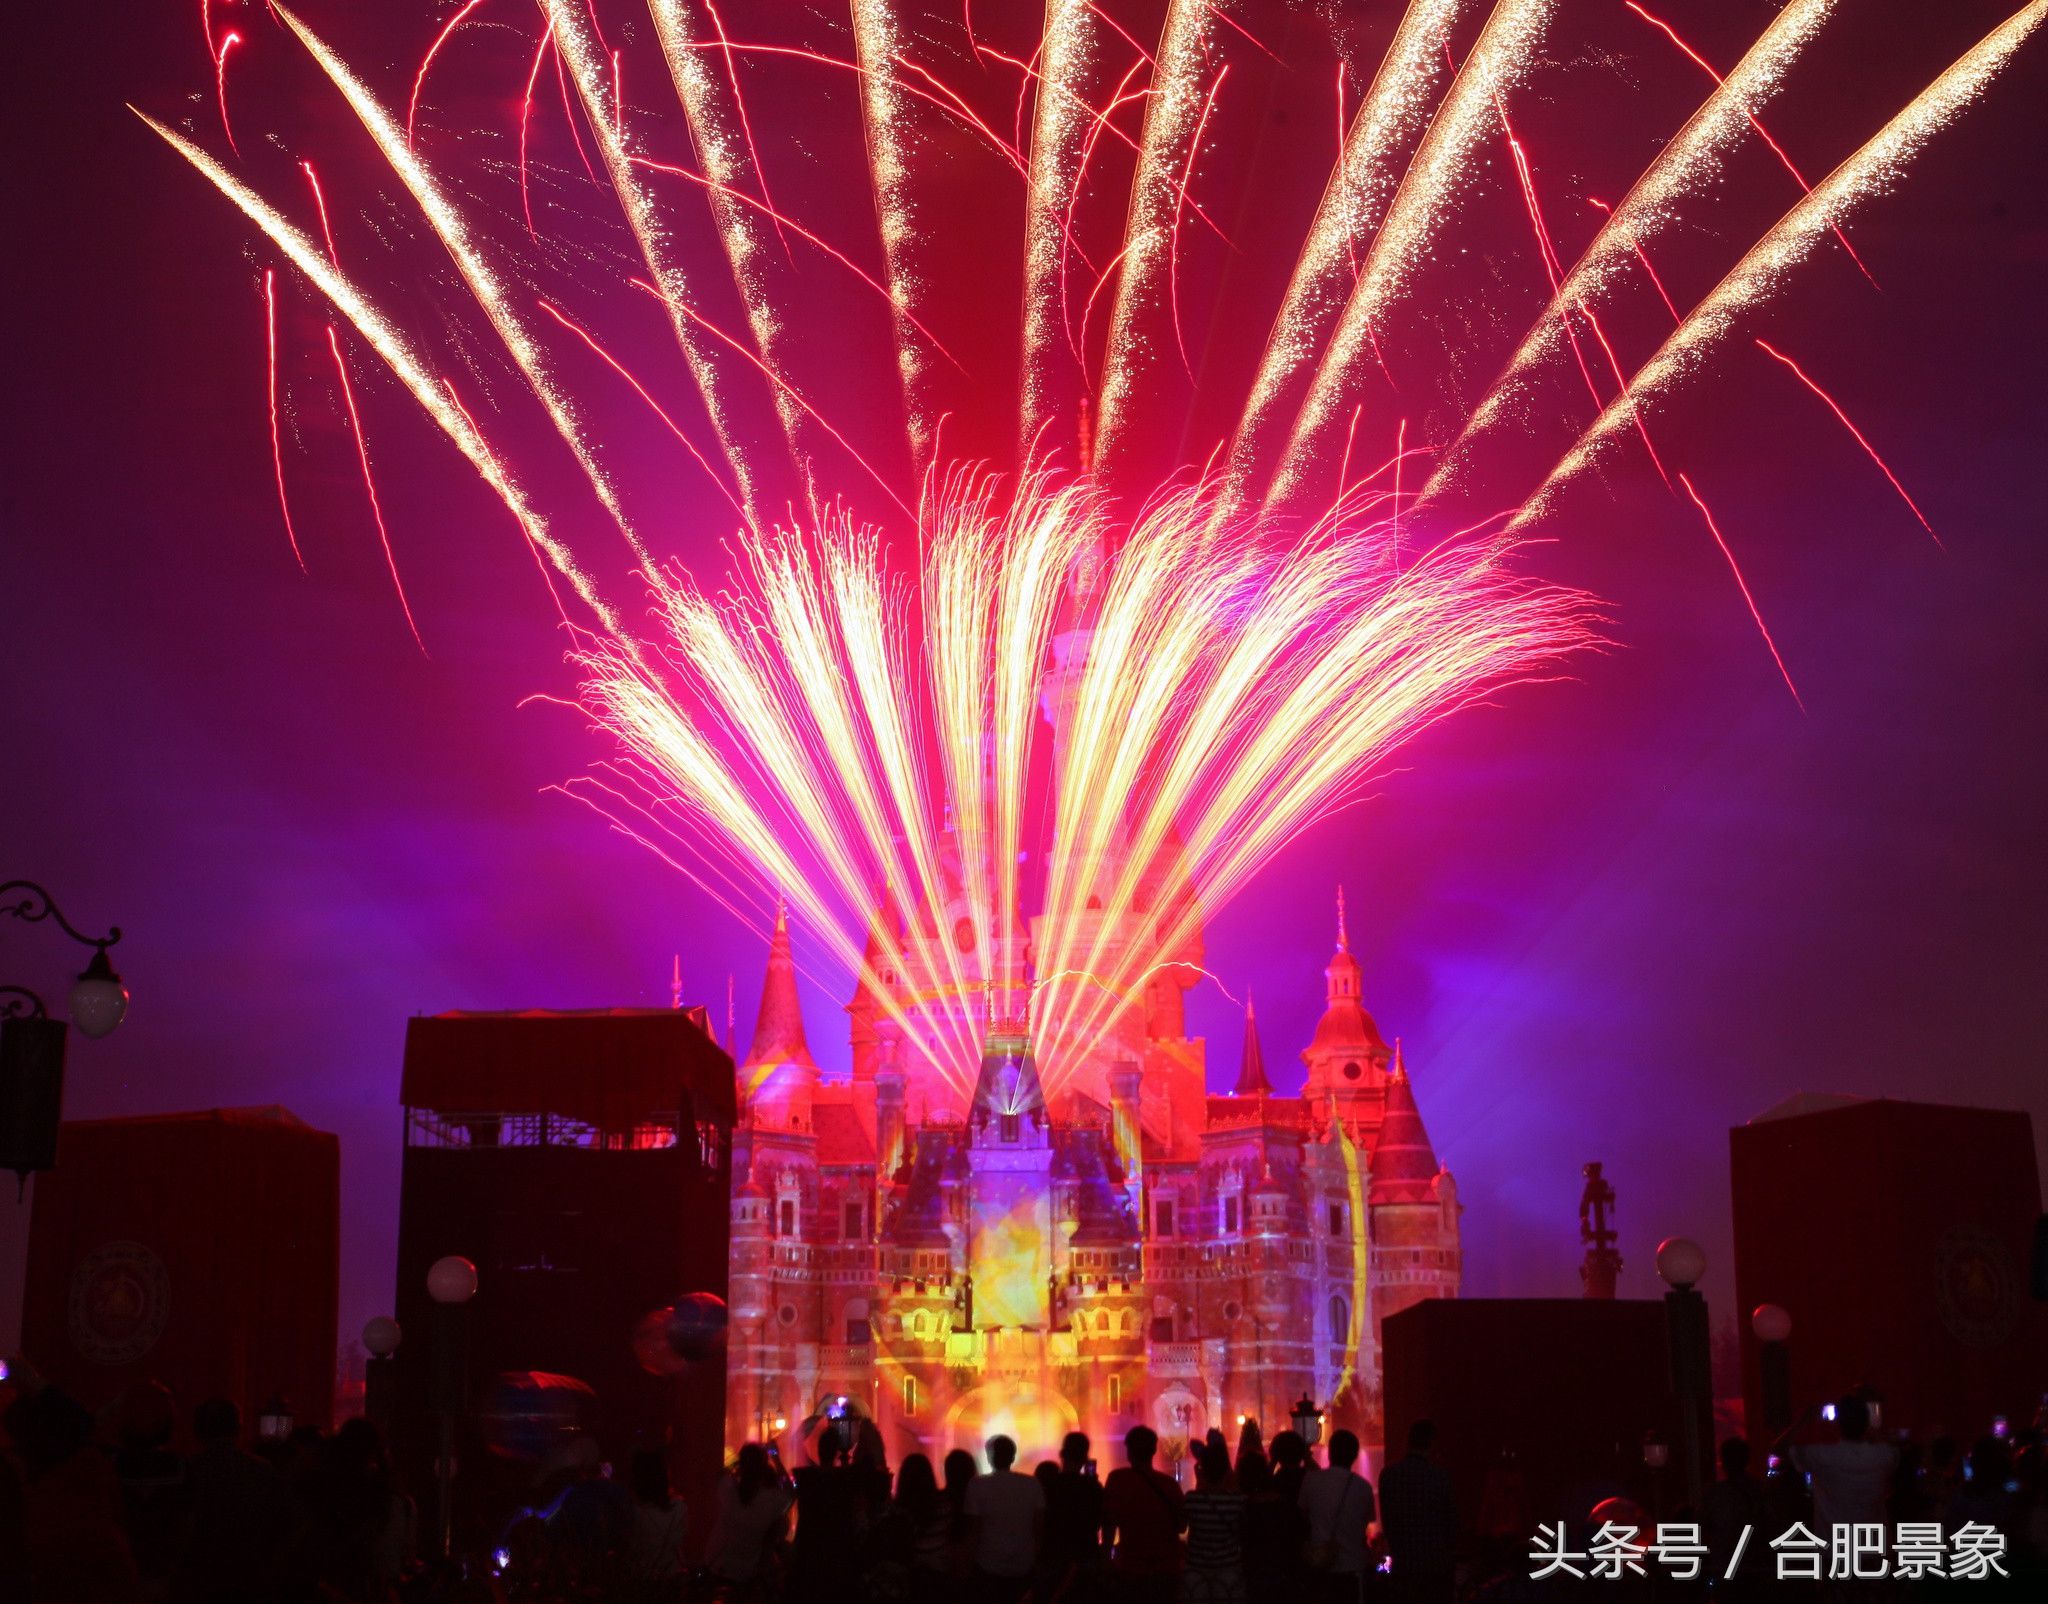 上海迪士尼最美焰火秀,欣赏童话般的焰火世界